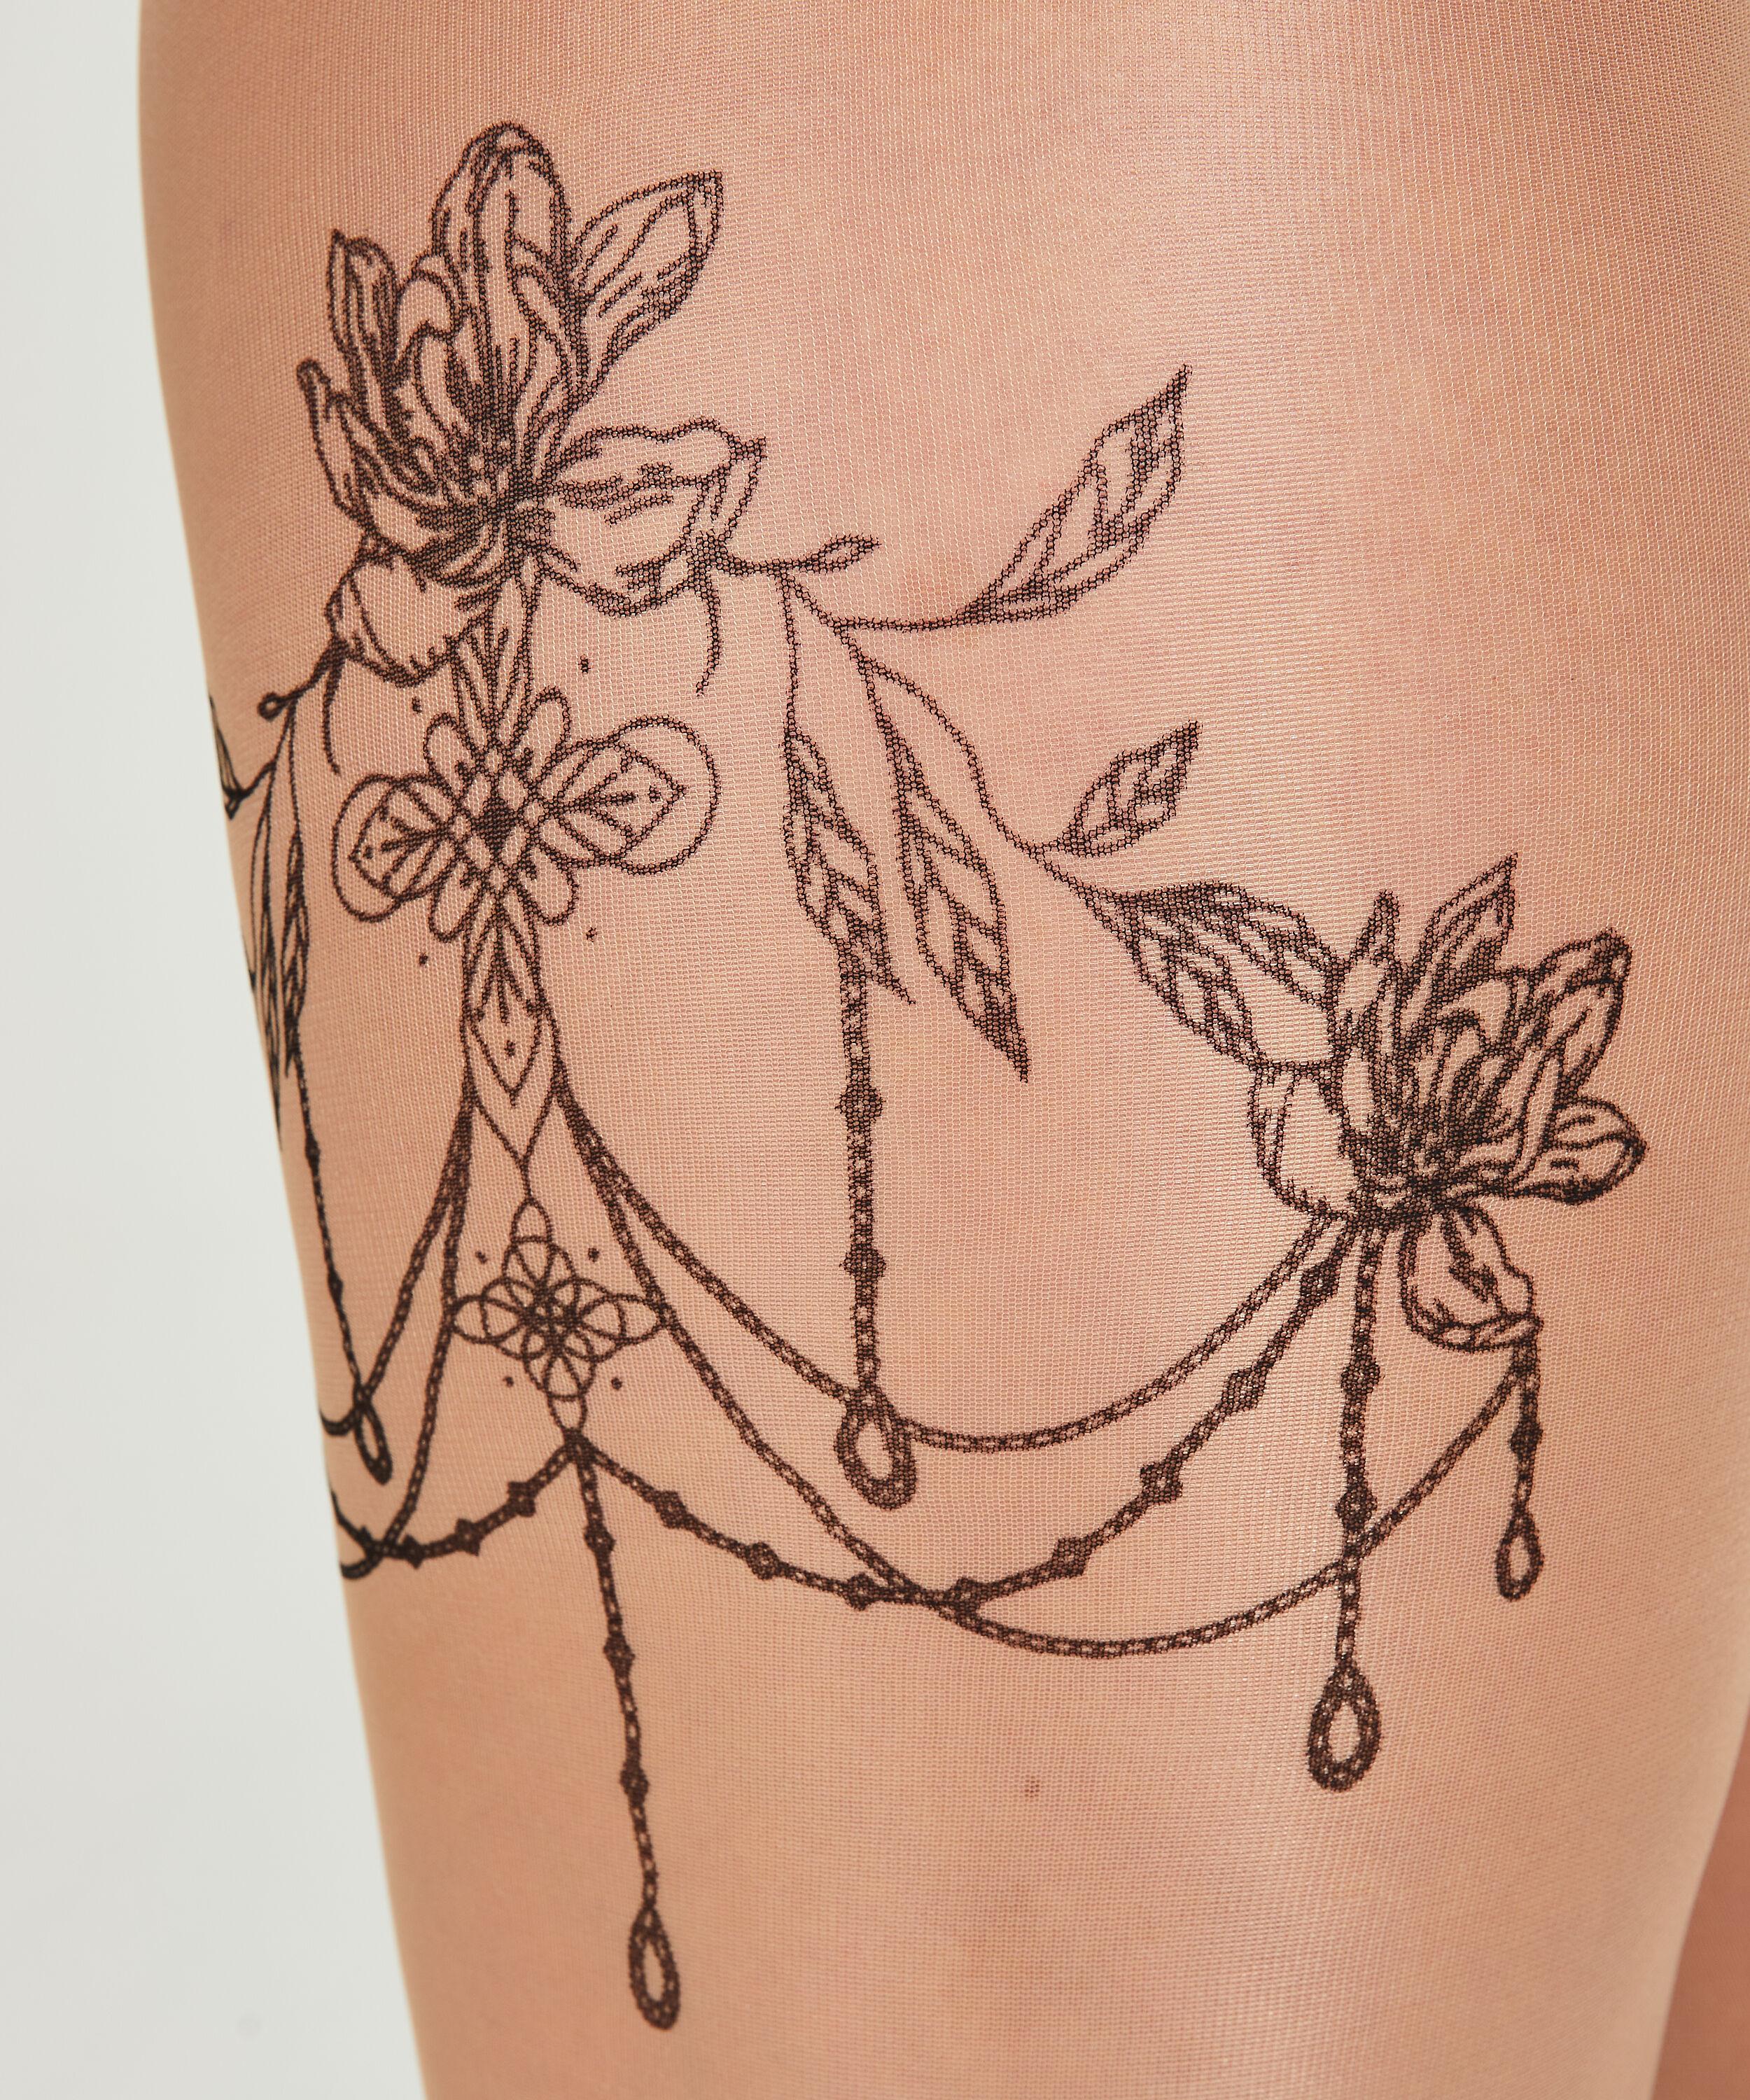 Hunkemöller Strumpfhose 15 Denier Leg Tattoos in Natur | Lyst DE